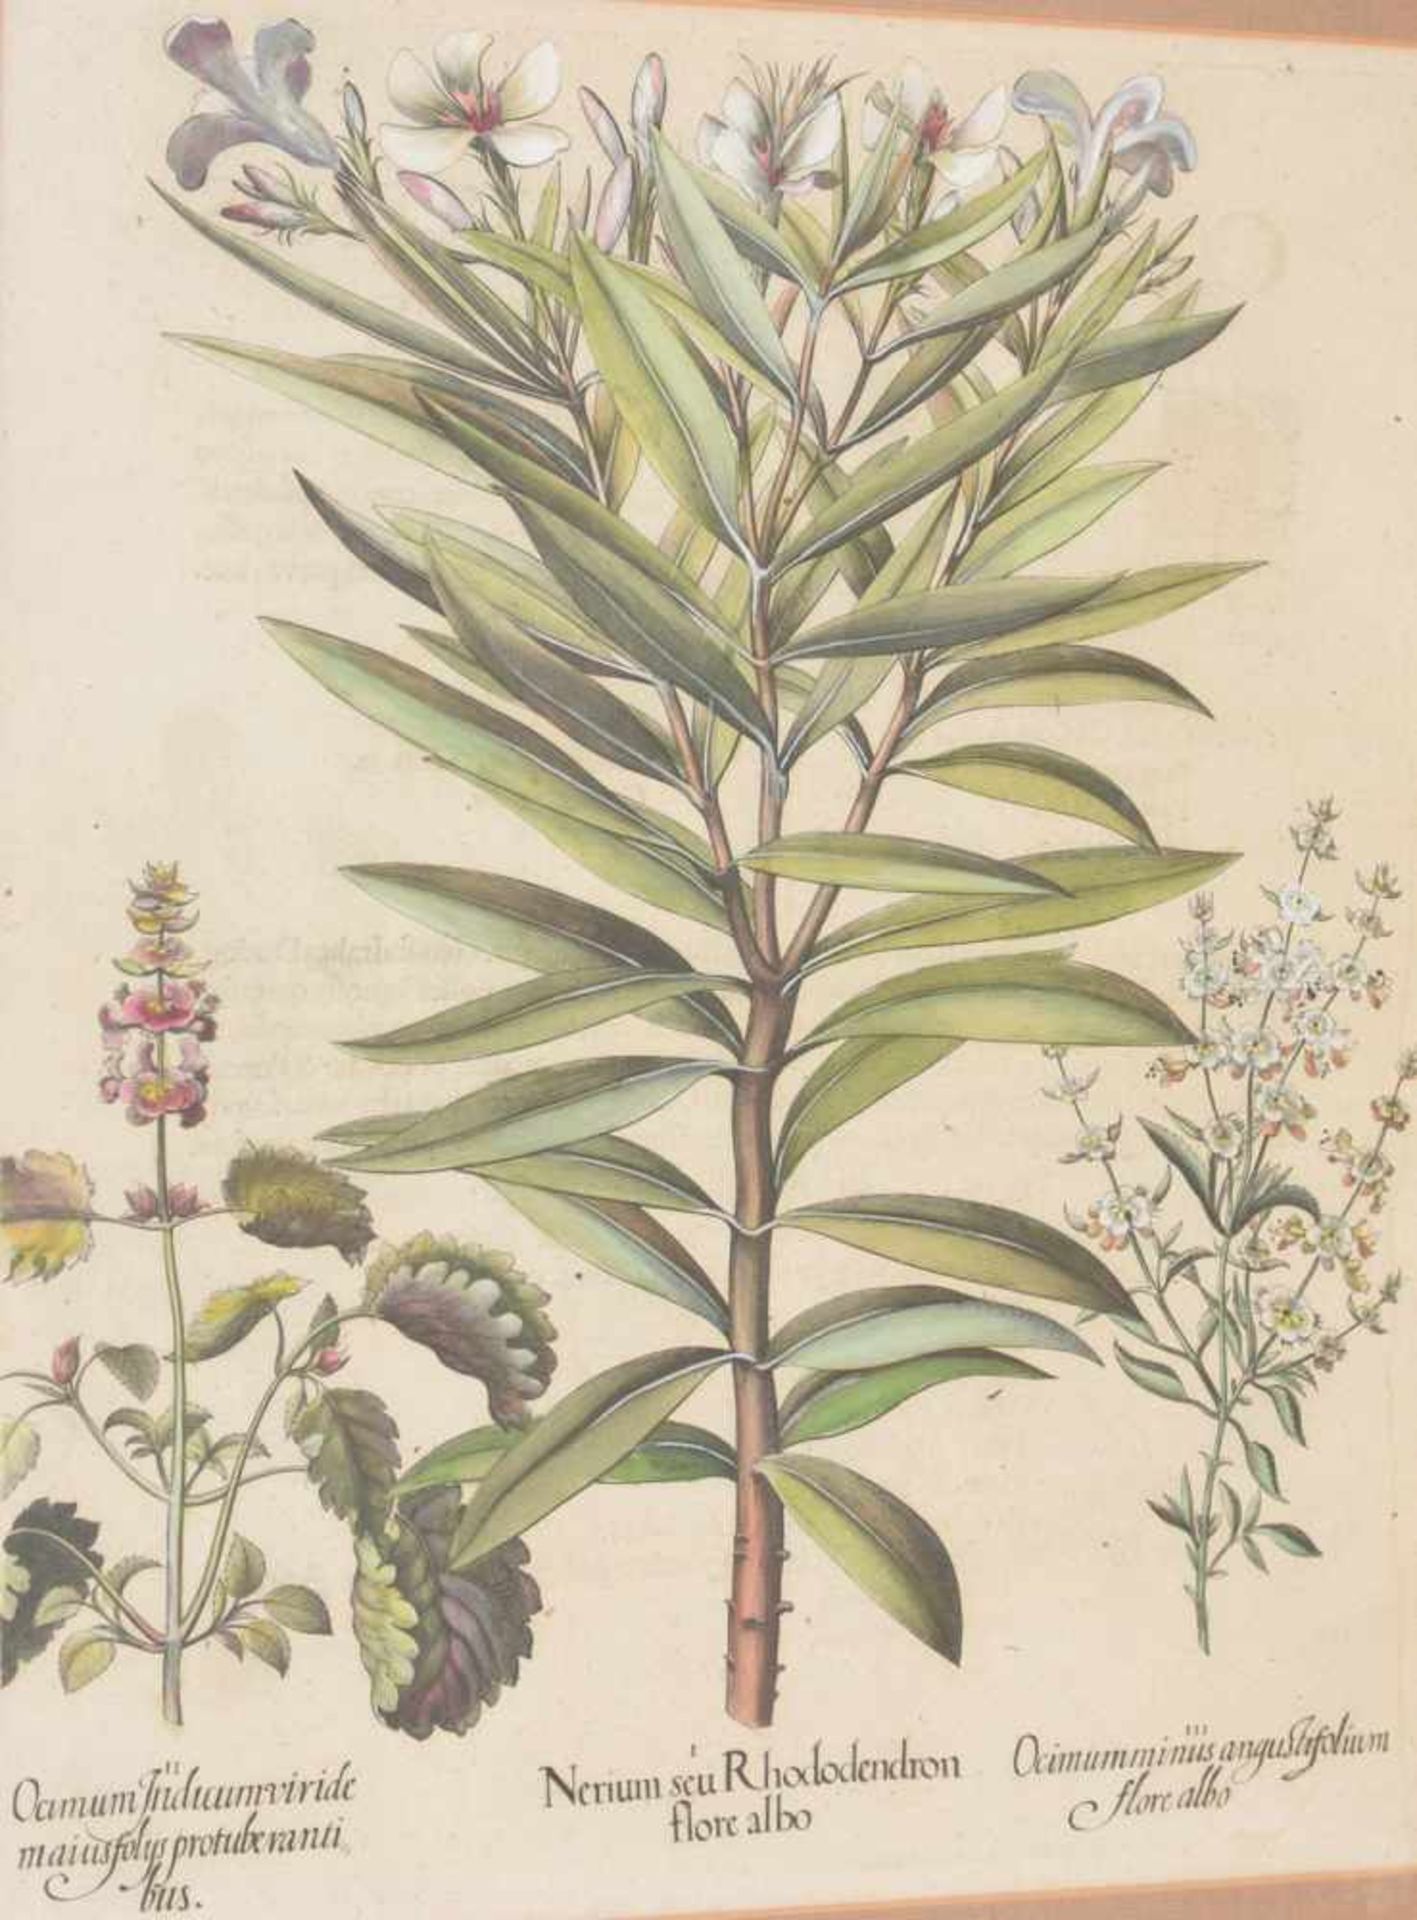 BASILIUS BESLER, Nerium seu Rhododendron, Auszug aus dem Hortus Eystettensis, Kupferstich,